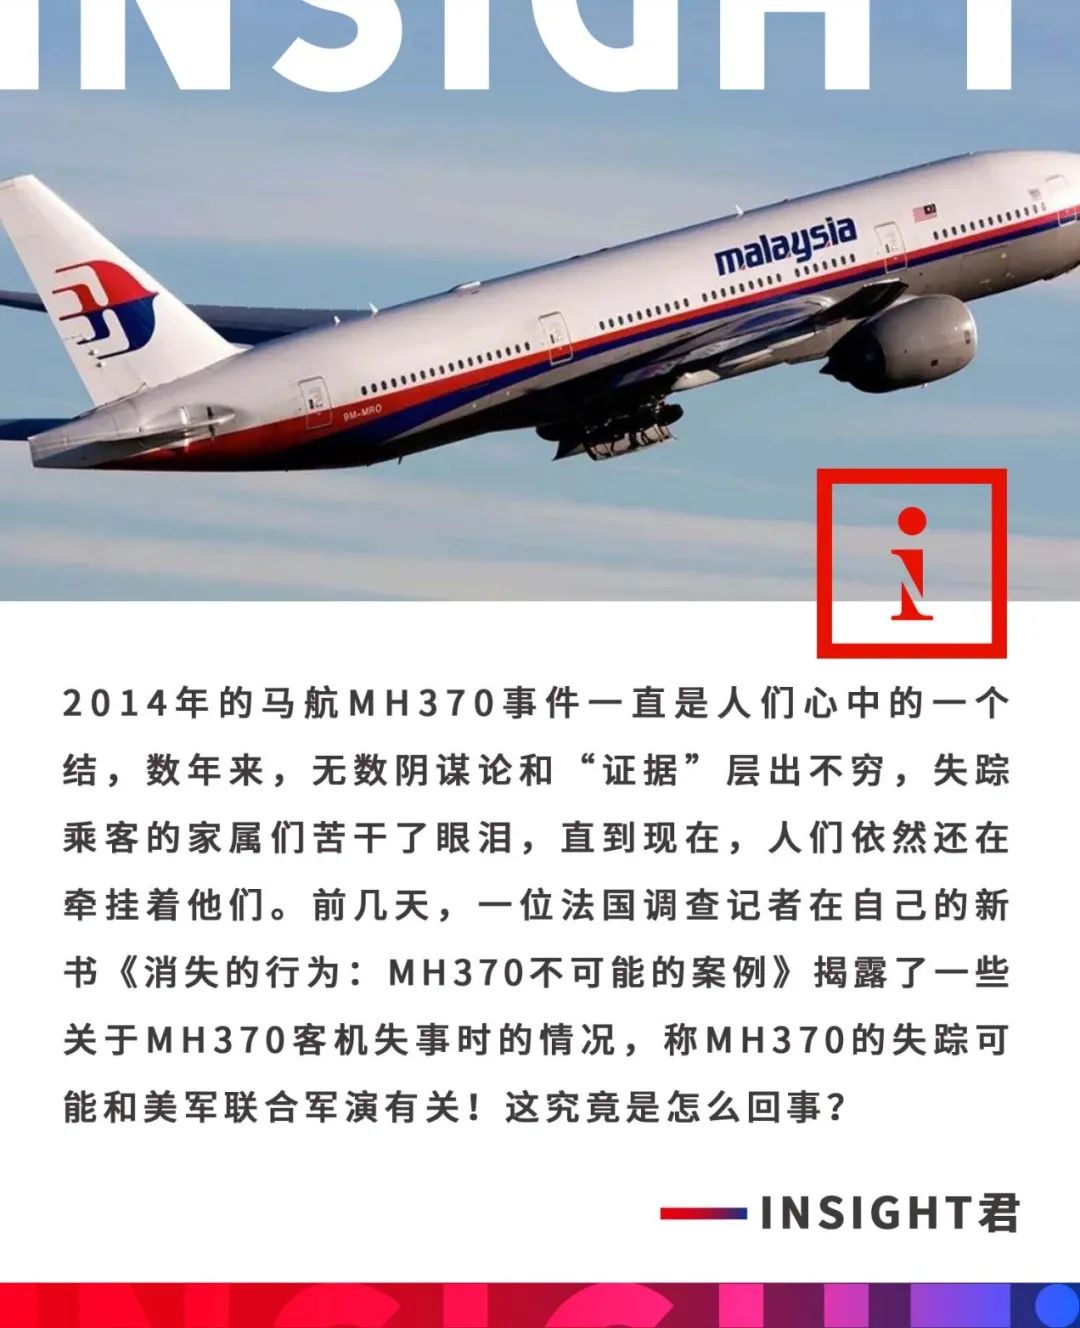 馬航MH370失事近10年 陸失聯乘客家屬終迎首次開庭 | 中天新聞網